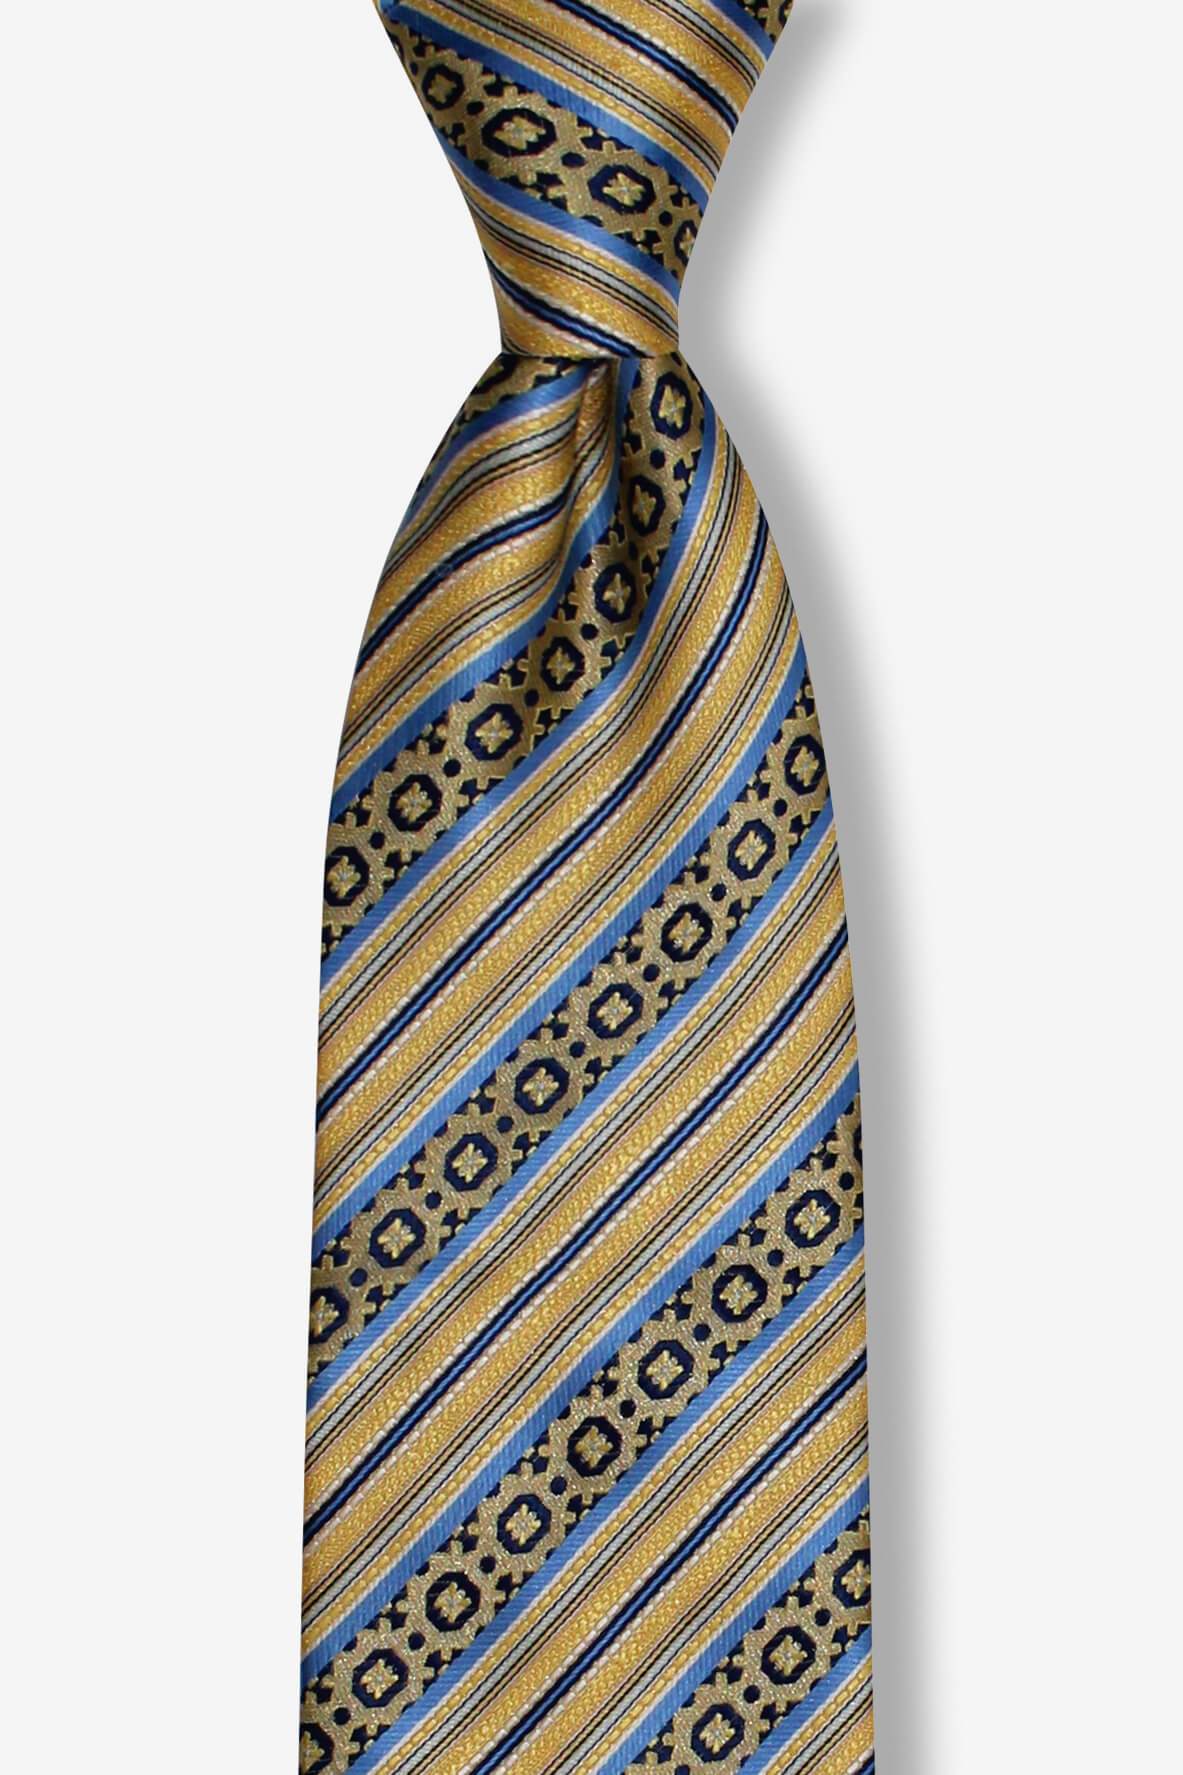 Gold Striped Geometric Pre-tied Tie, Tie, GoTie